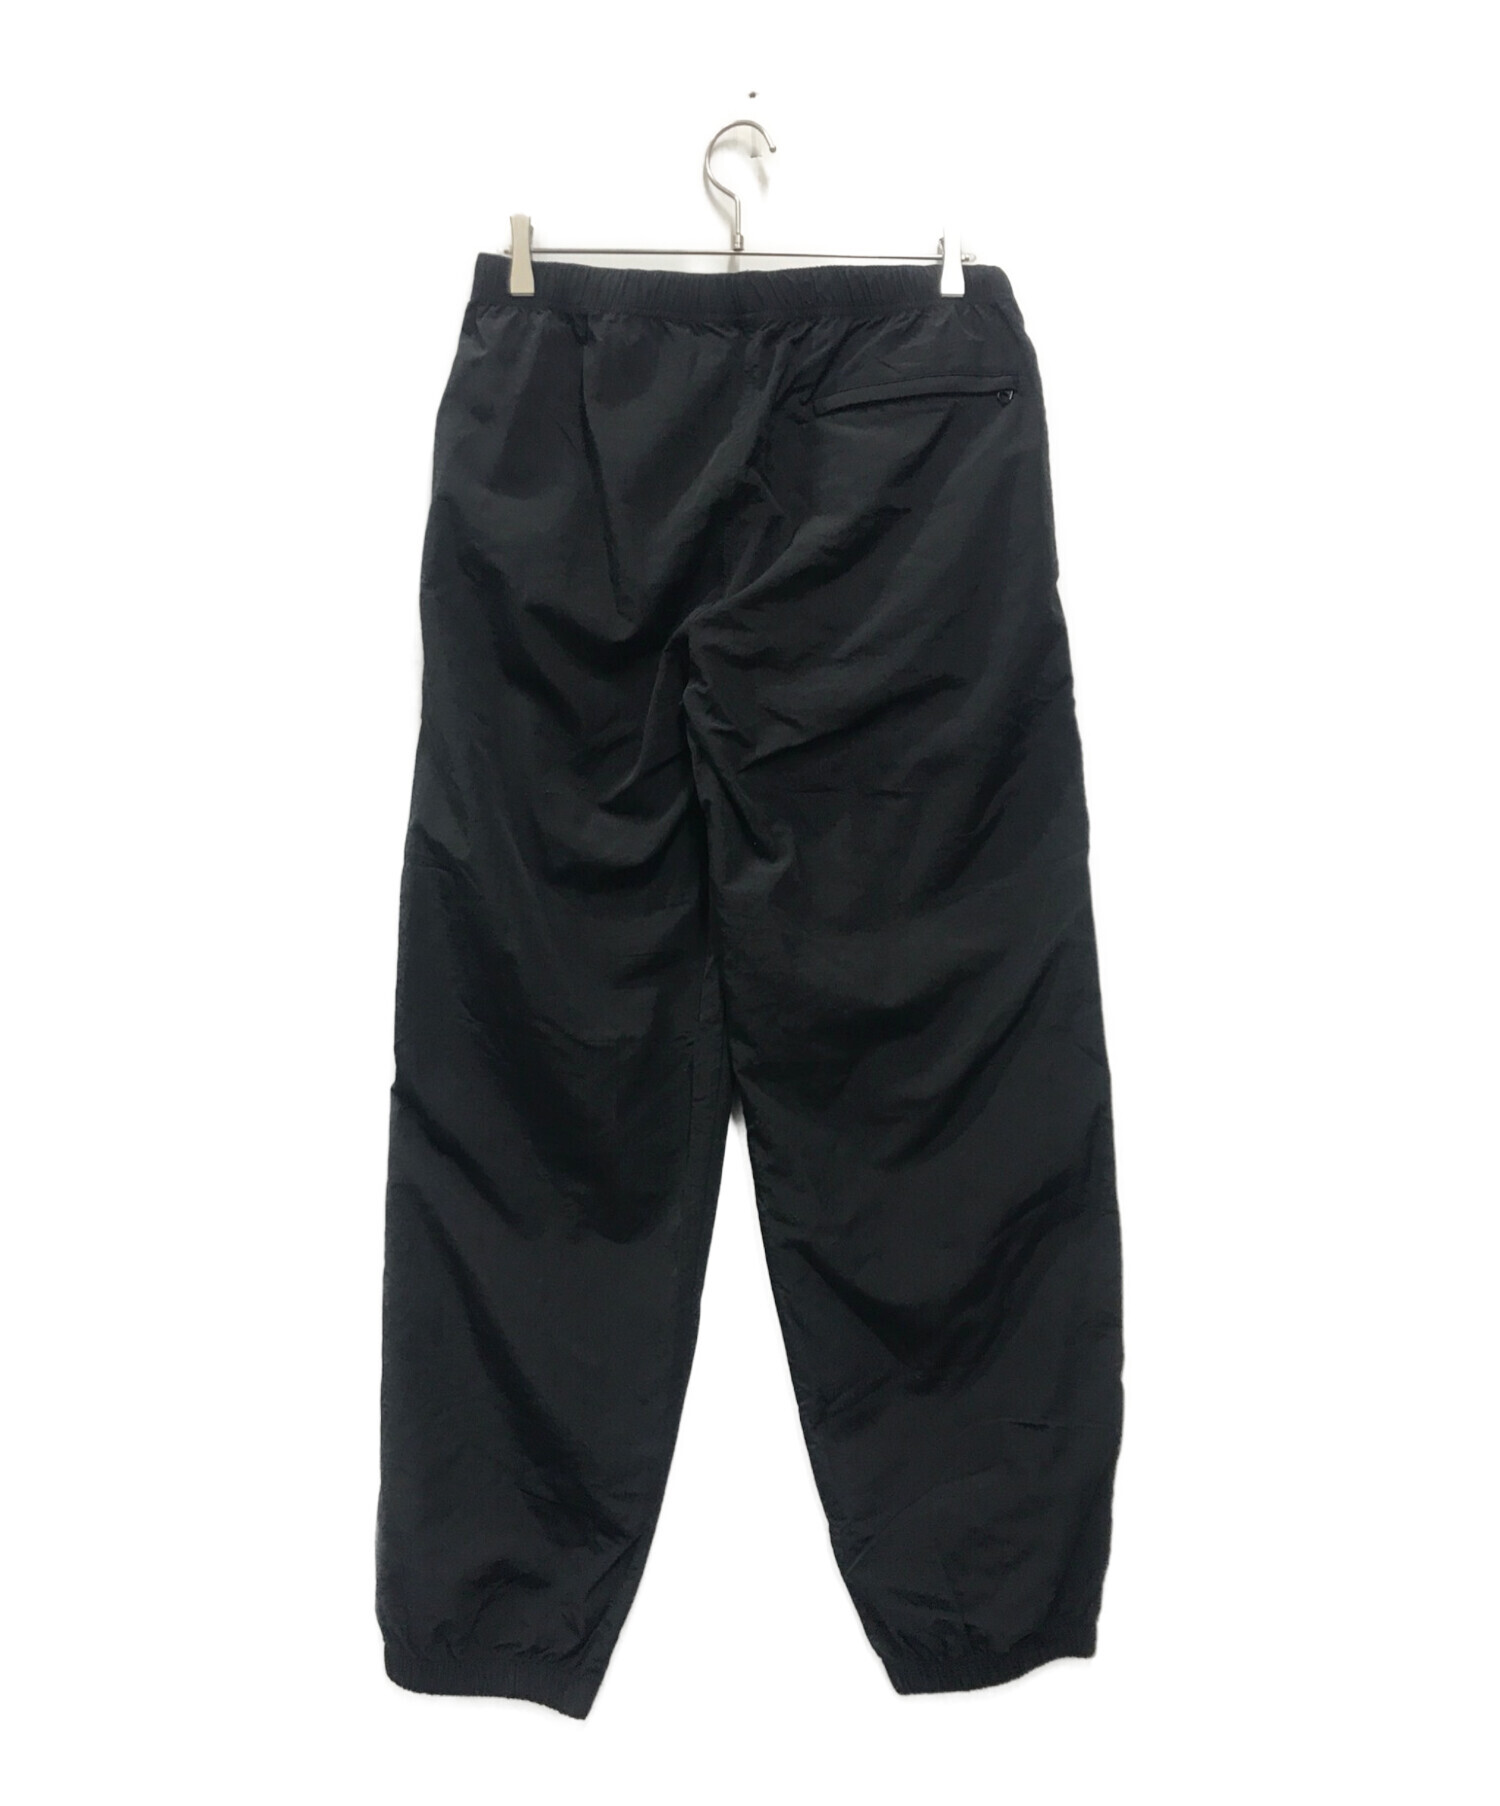 TW (➖) Unisex Nylon Pants ブラック サイズ:L